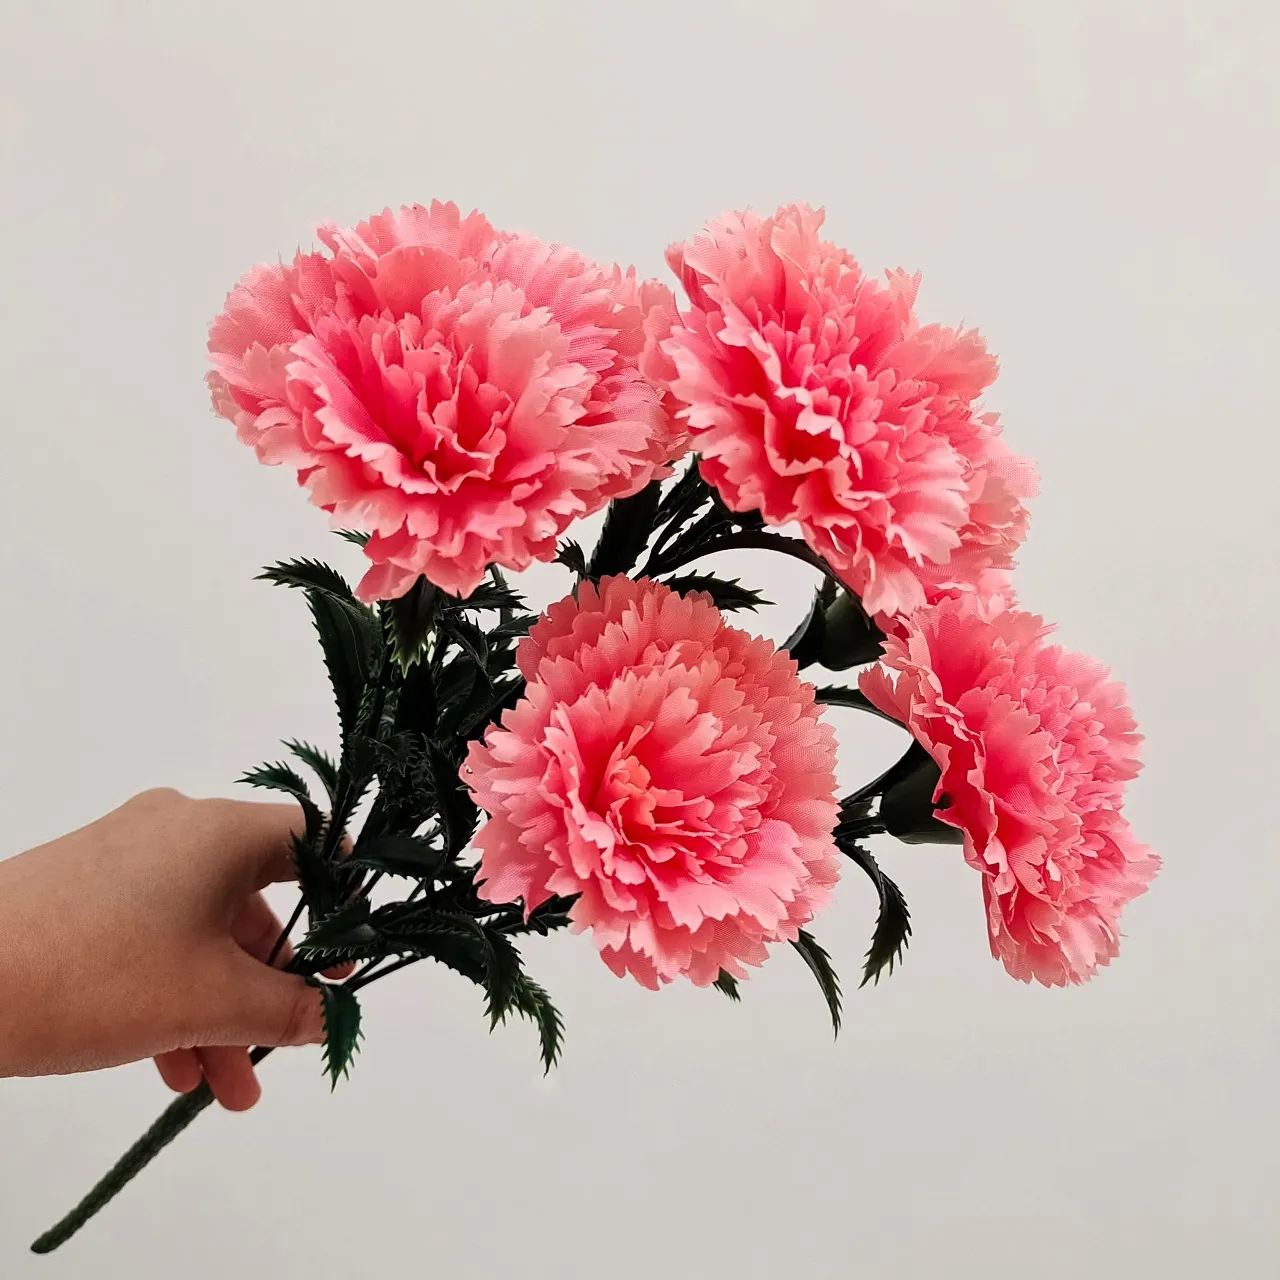 Flor de clavel de seda artificial para el día de la madre, regalo barato a granel, blanco, rosa, rojo, decoración del hogar